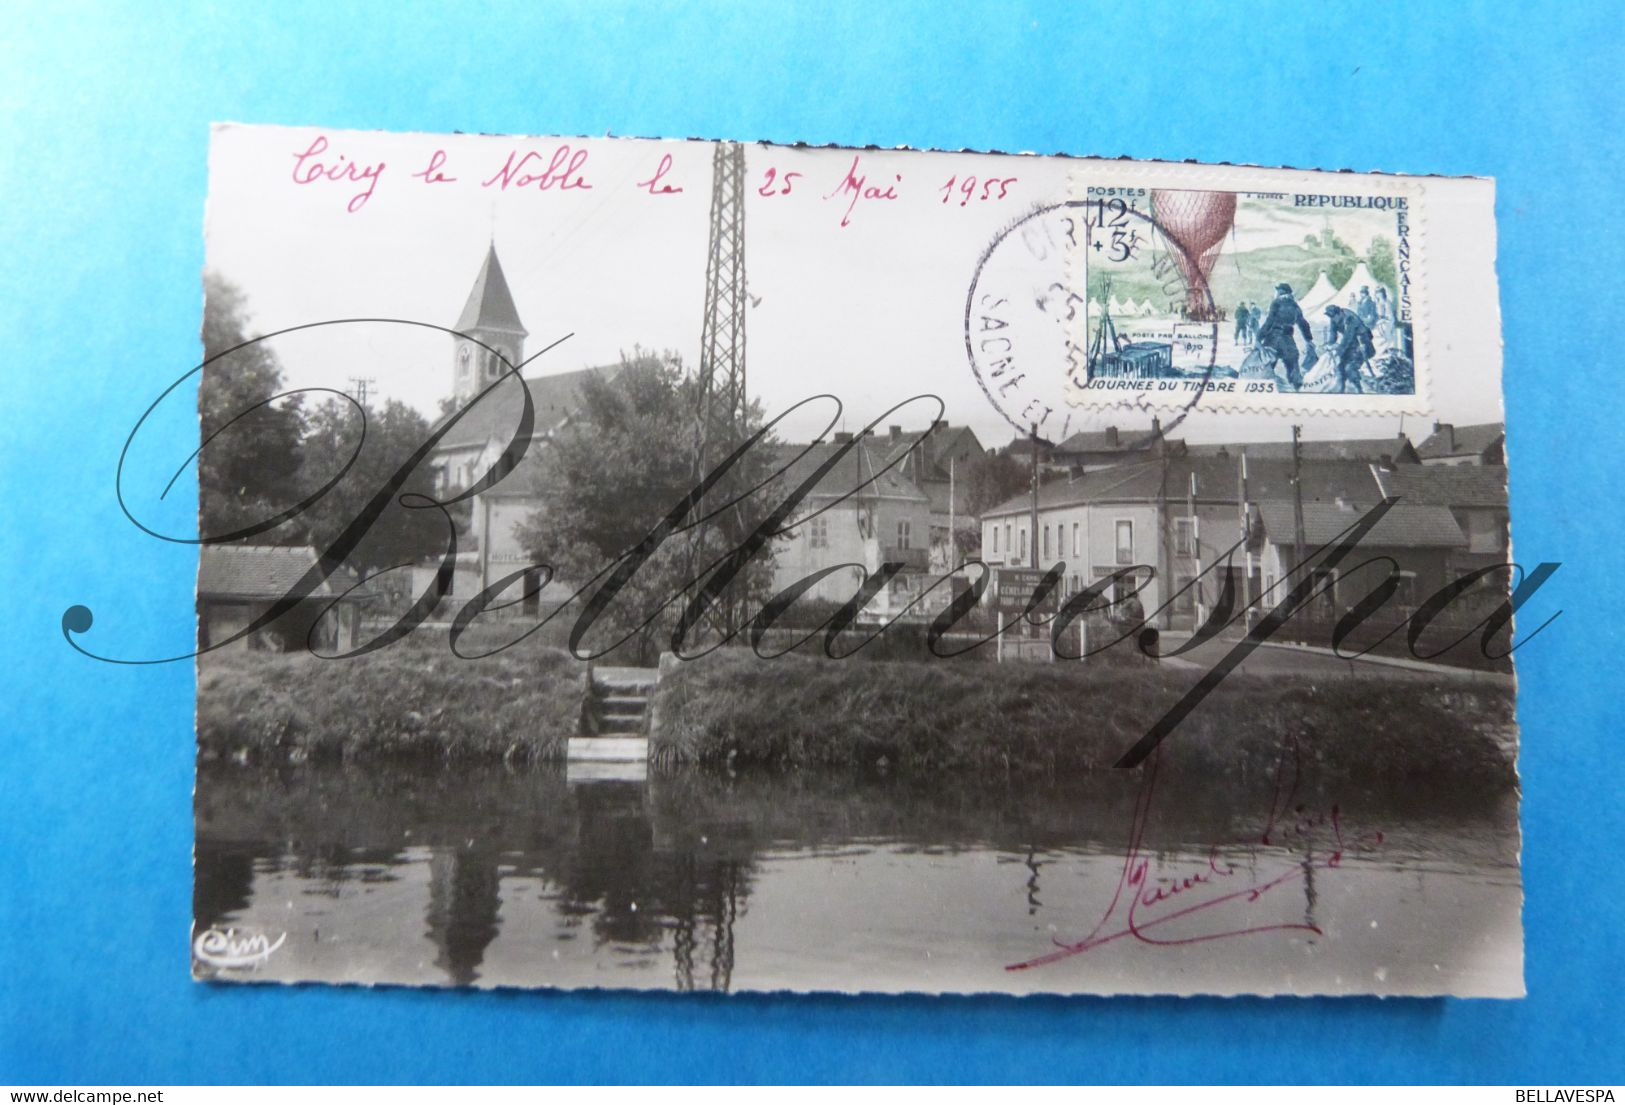 Ciry-le-Noble Canal Du Centre Et Pont Sur La Bourbince.  Timbre Français N° 1018- D 71-1955 - Le Creusot